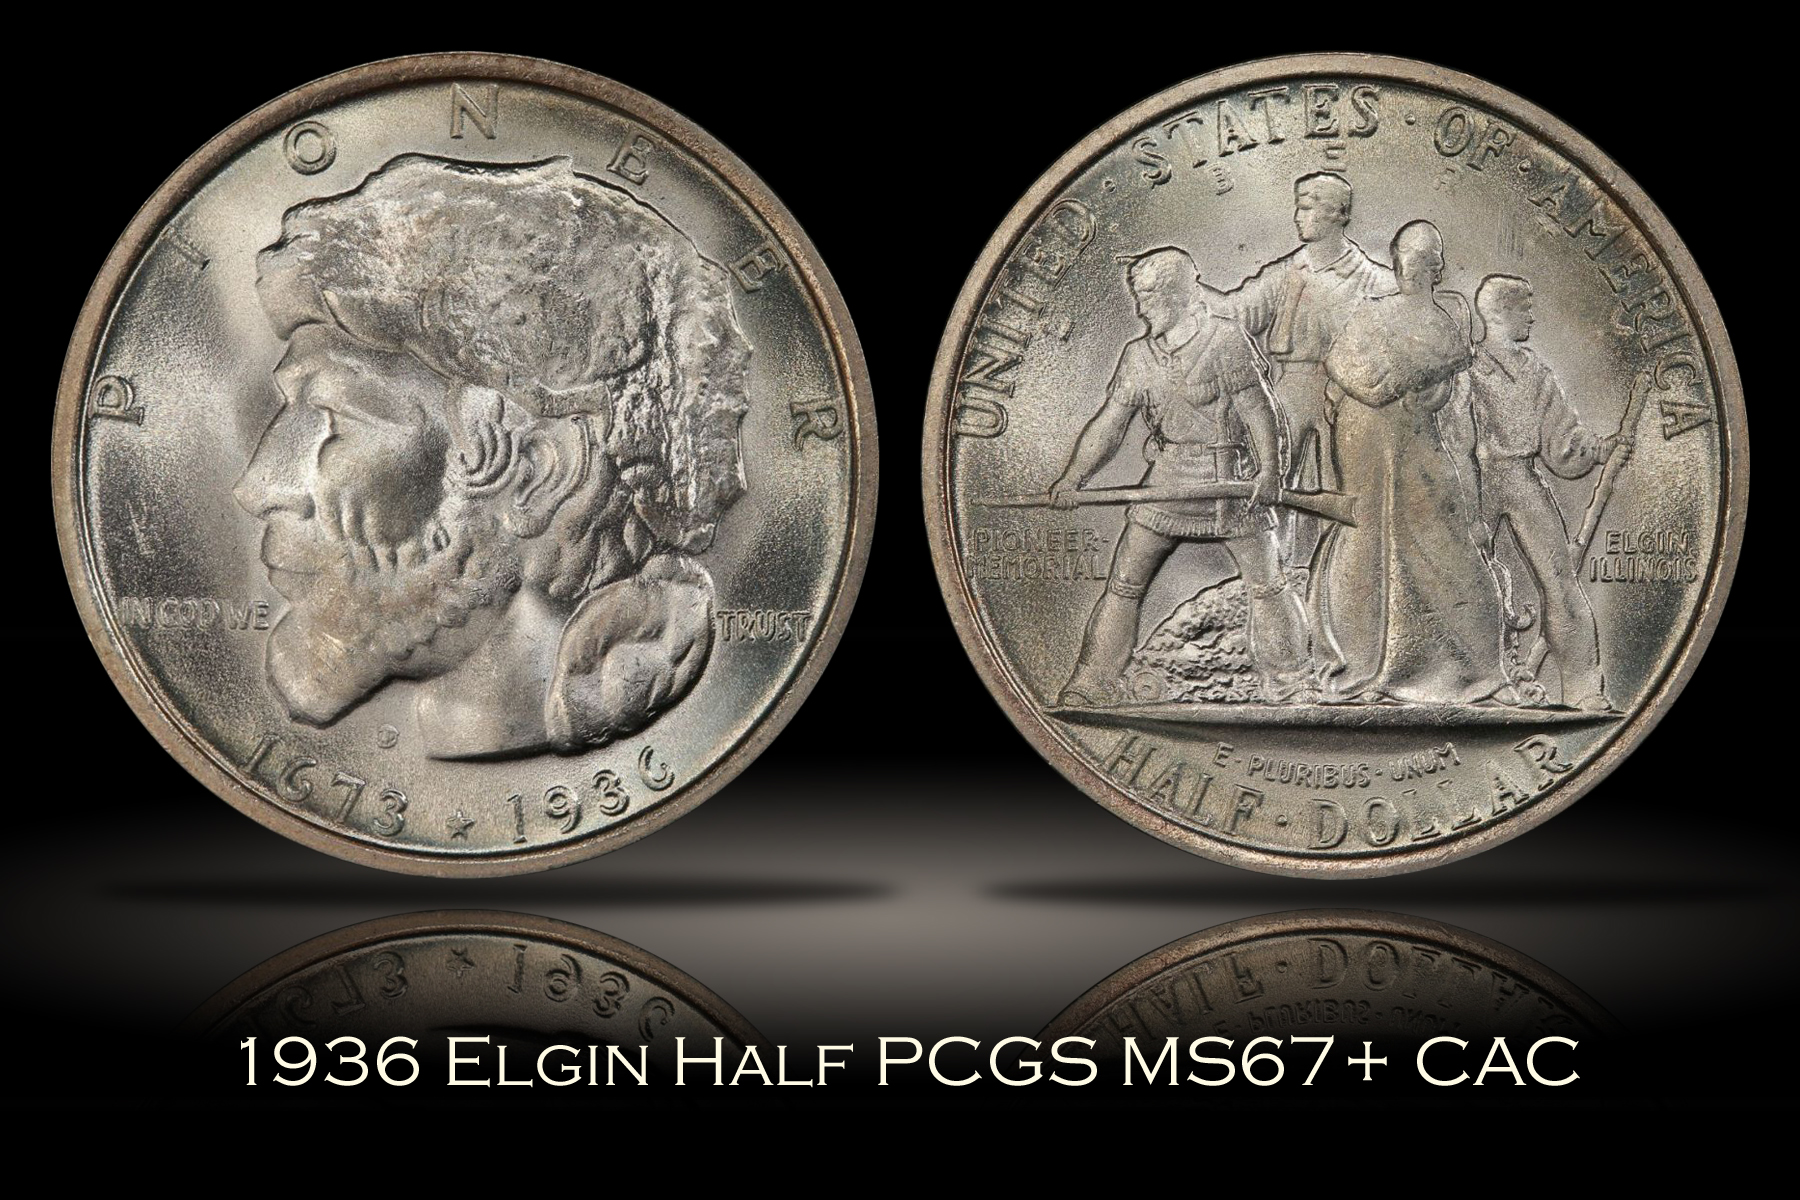 1936 Elgin Half PCGS MS67+ CAC